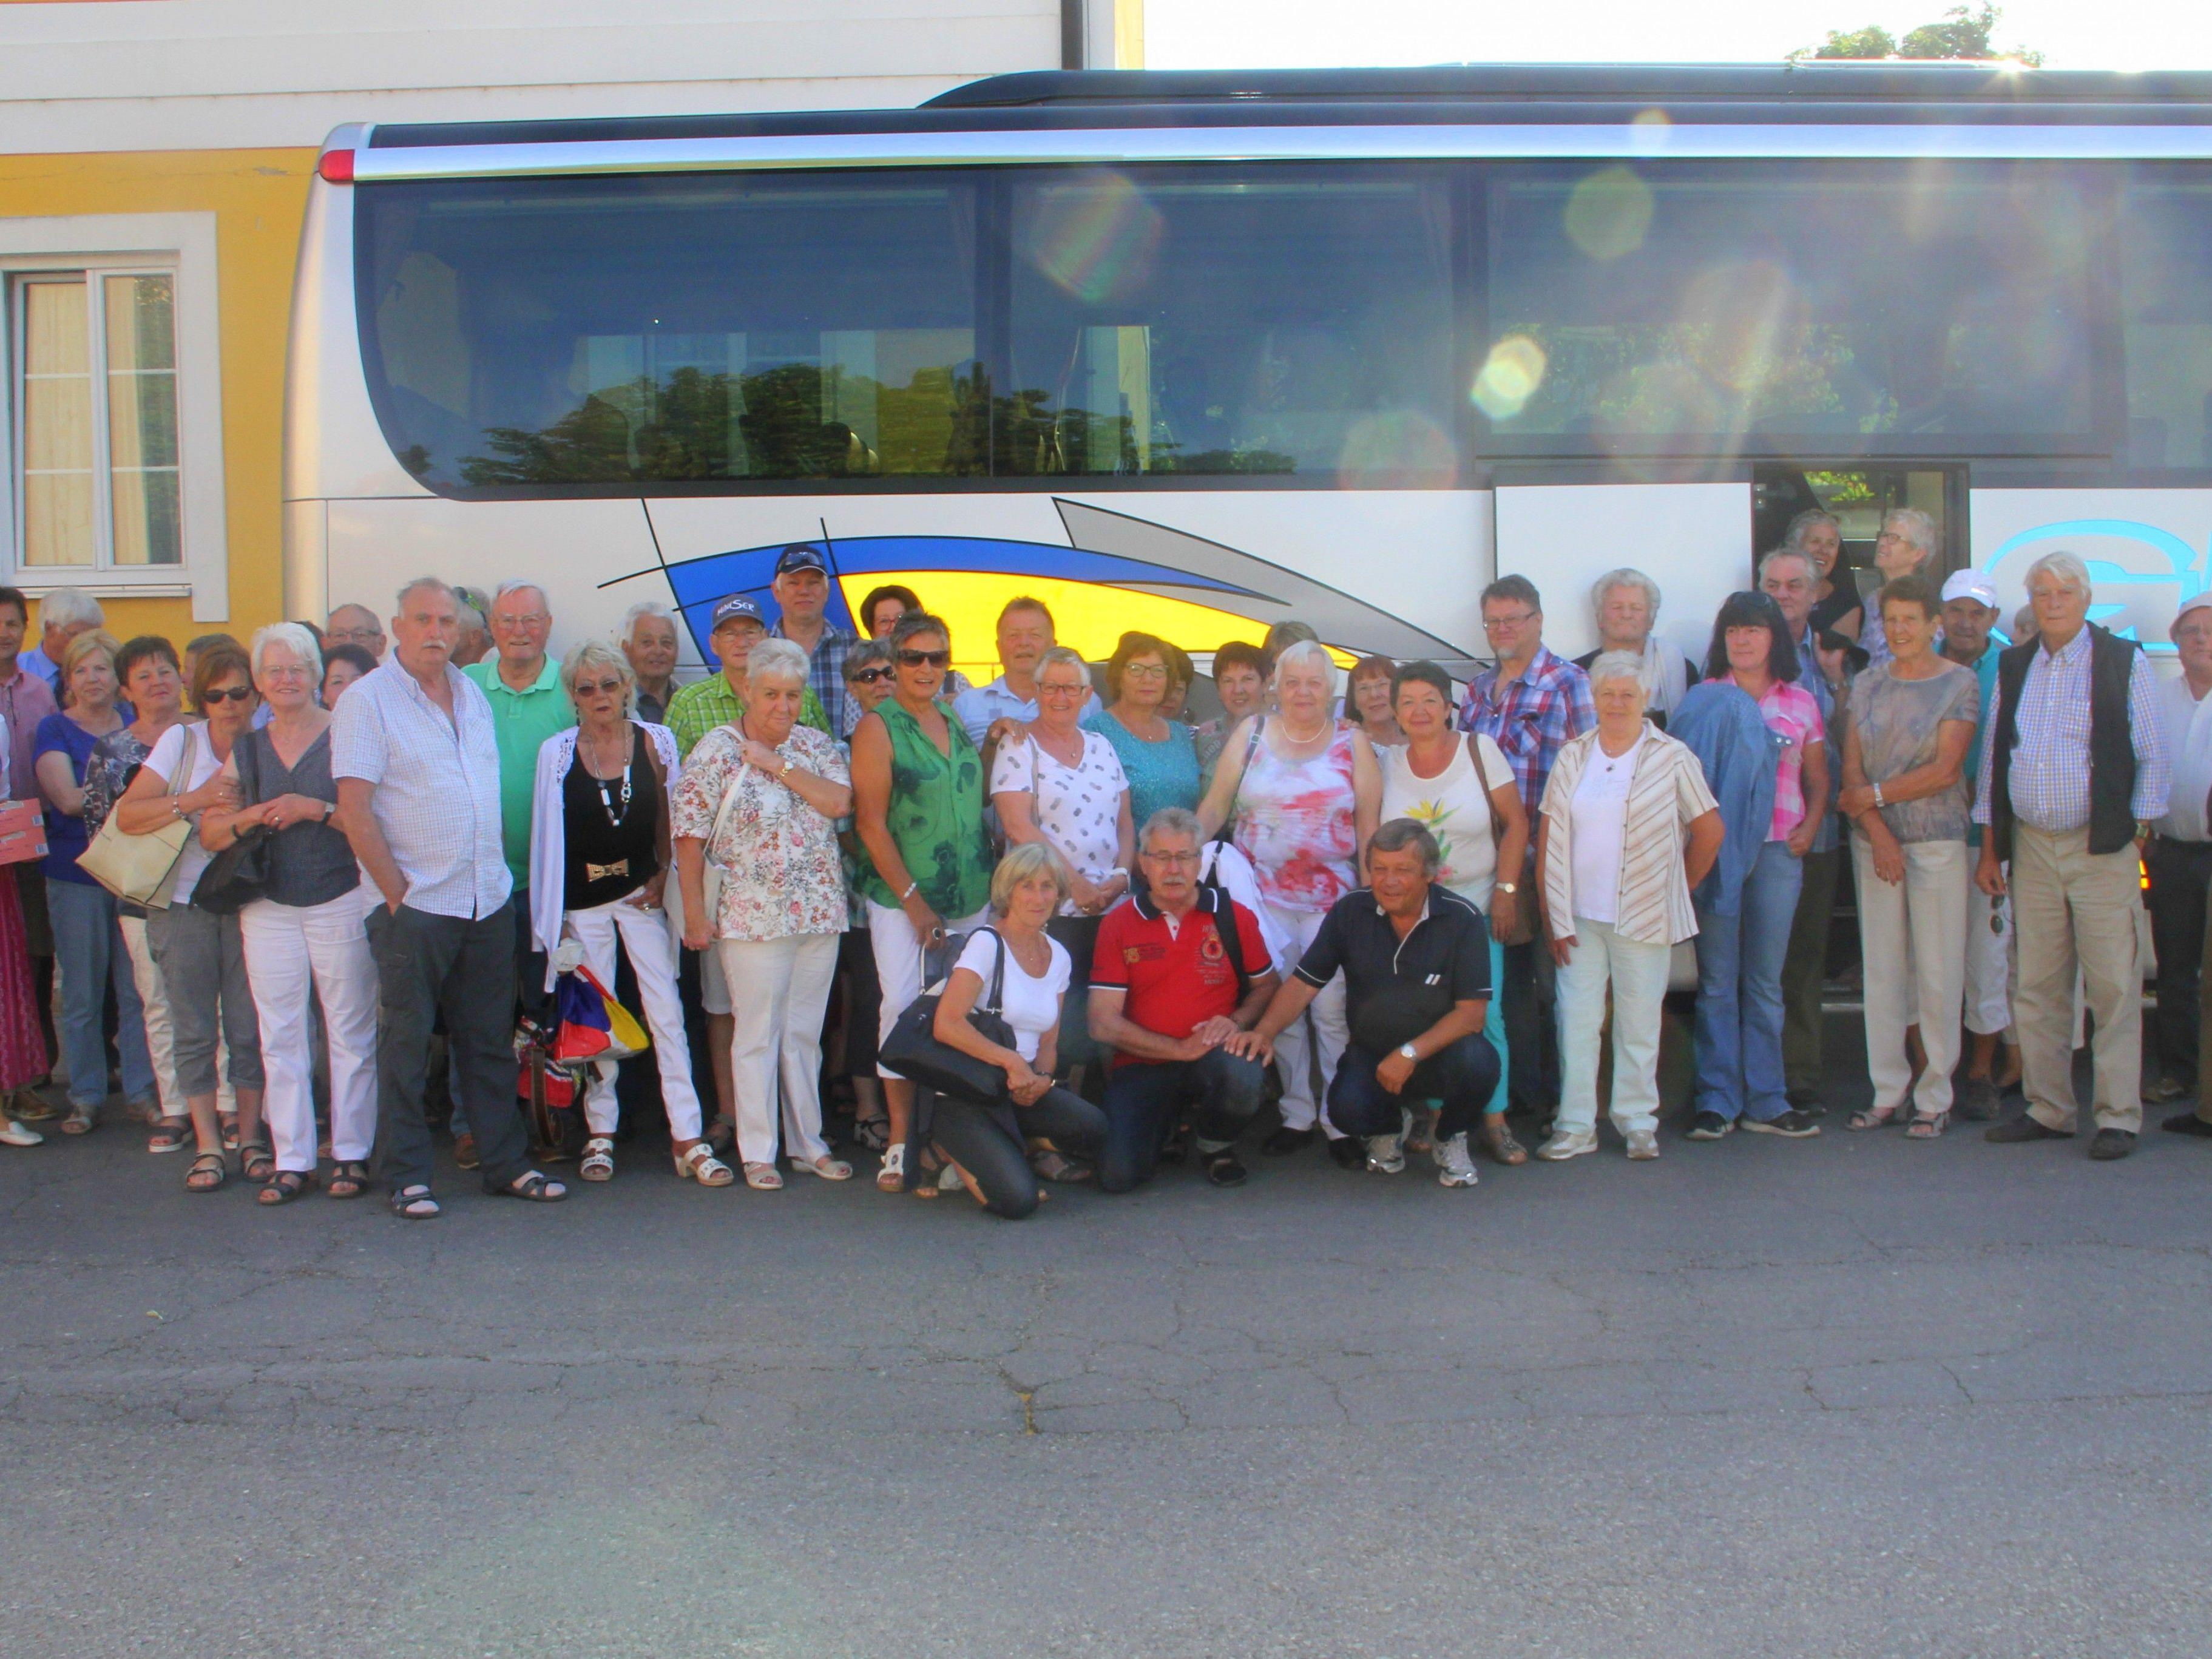 47 Seniorenringler erlebten eine unvergessliche Ausflugsfahrt nach Niederösterreich